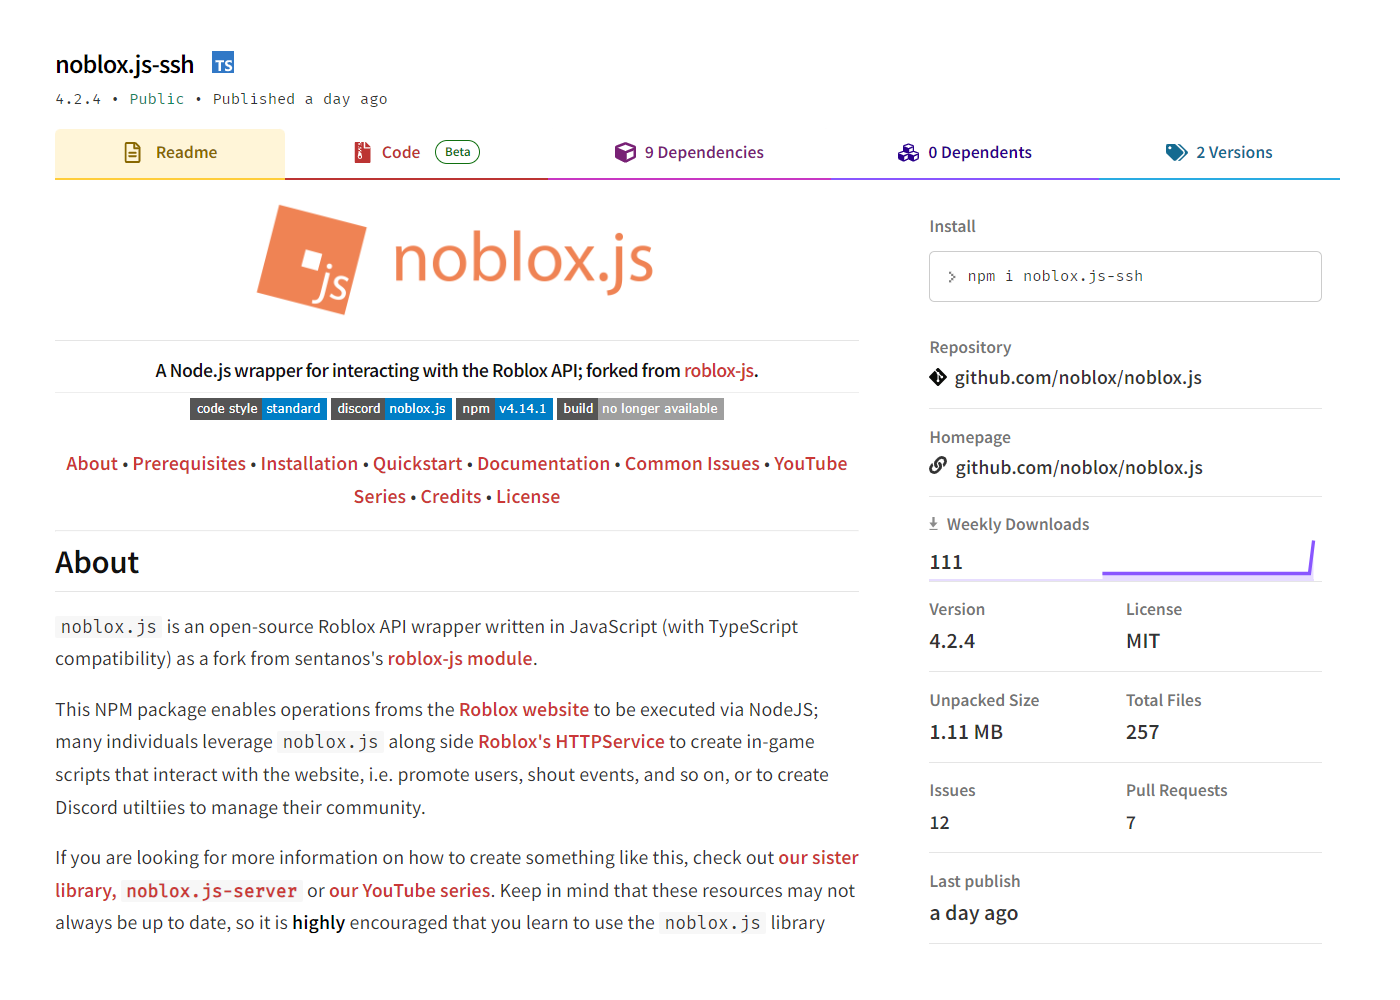 noblox.js-ssh’s npm page